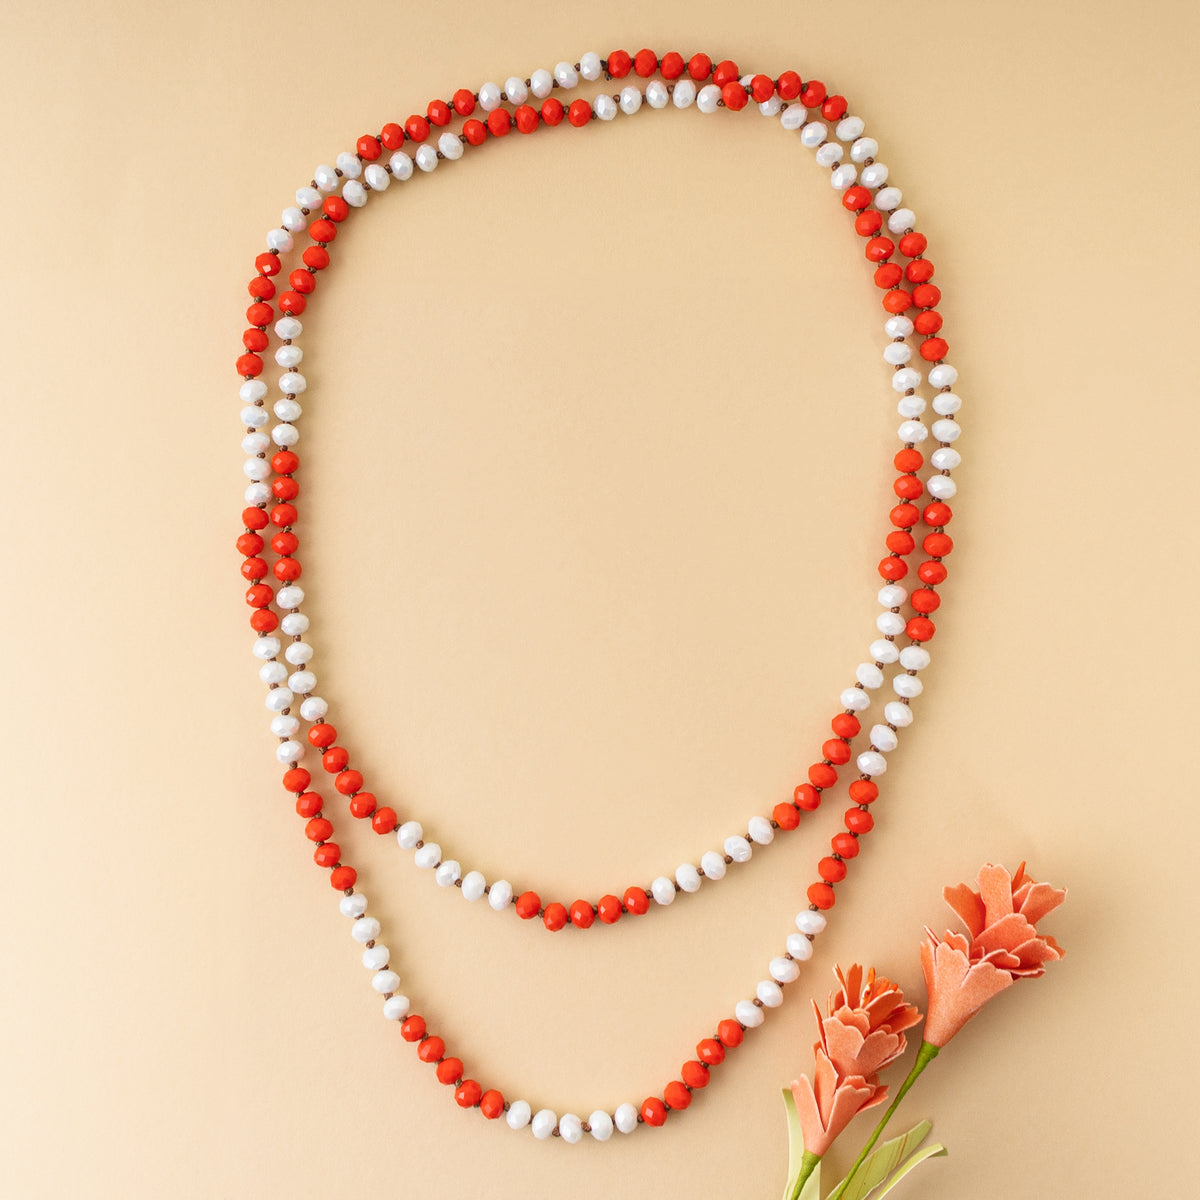 72028-35 - Crystal Beaded Necklace - Orange & White - Fashion Jewelry Wholesale